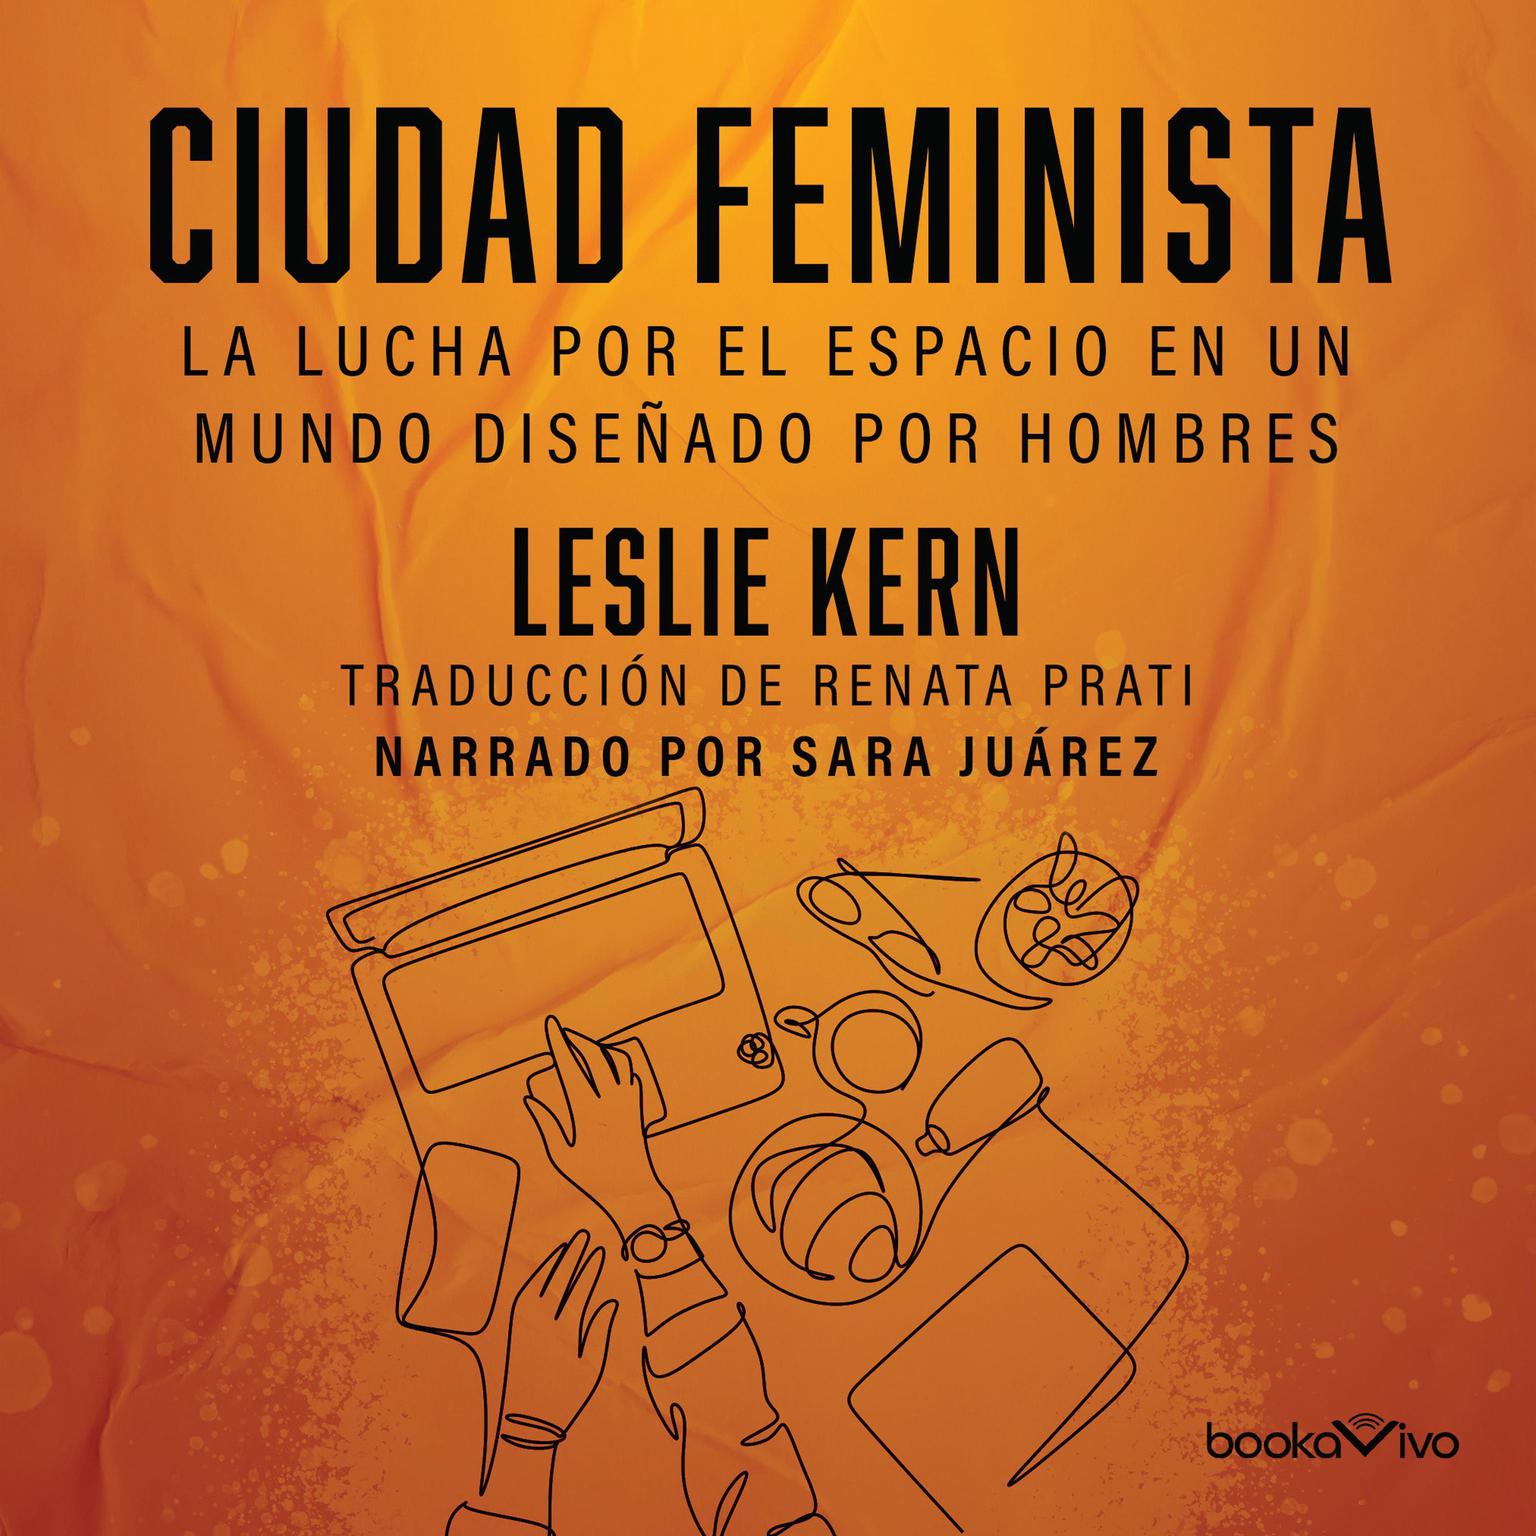 Ciudad feminista (Feminist City): La lucha por el espacio en un mundo diseñado por hombres (Feminist City: Claiming Space in a Man-Made World) Audiobook, by Leslie Kern